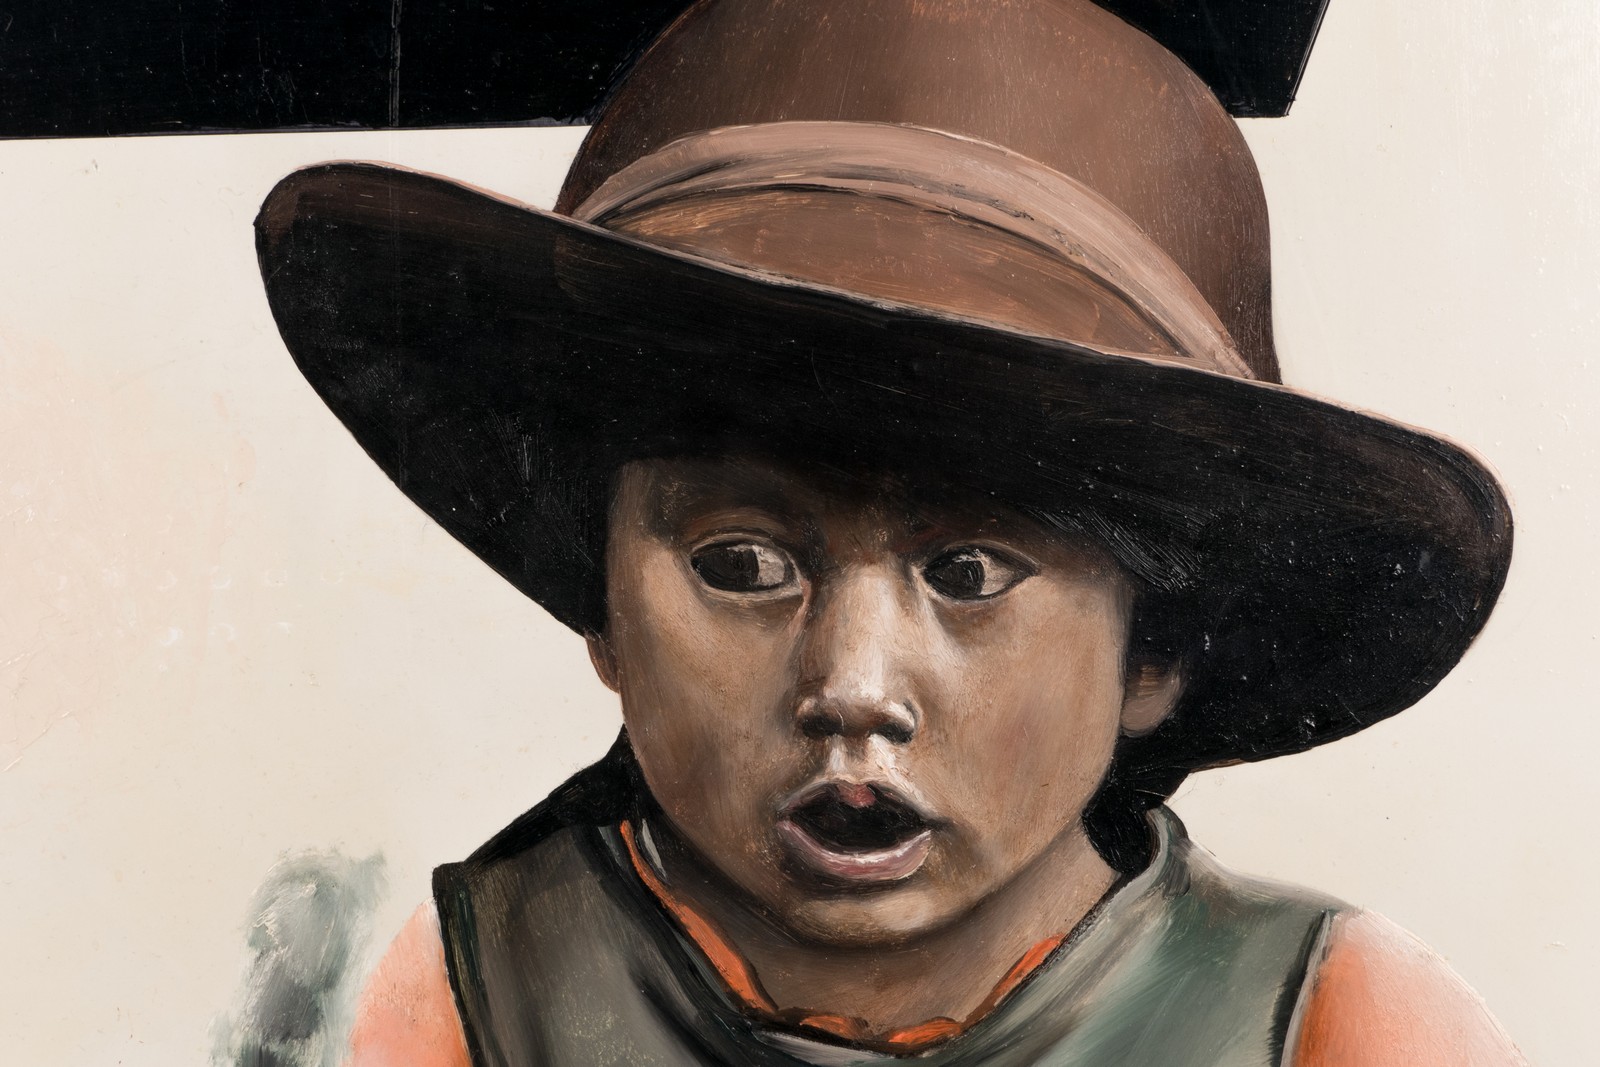 Van den Bulcke J., Maya girl, oil on canvas, 86 x 121 cm - Image 7 of 7